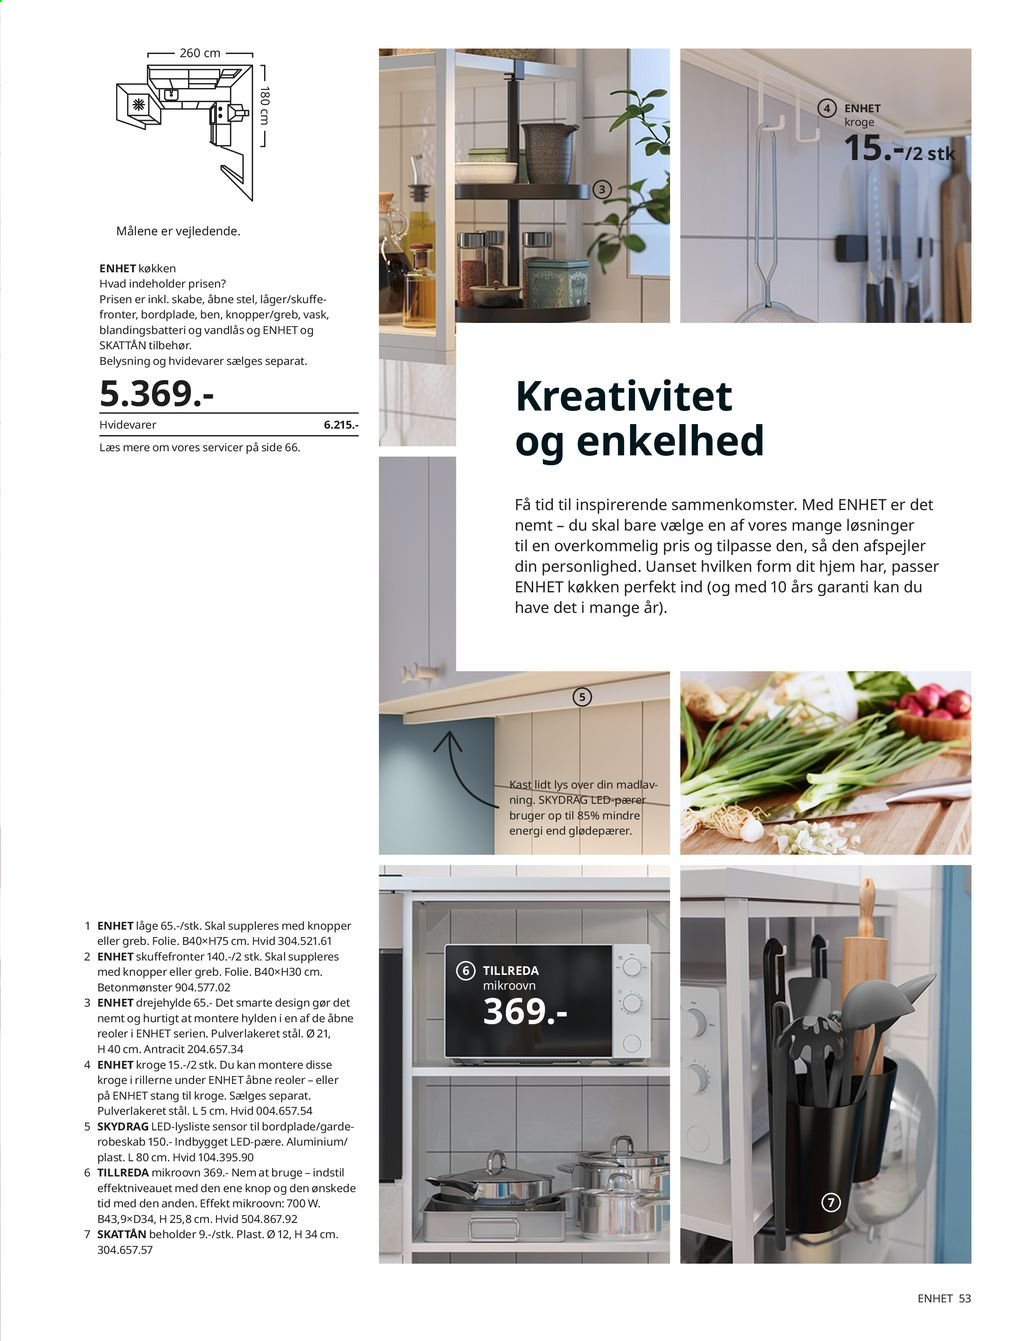 IKEA tilbudsavis . Side 53.